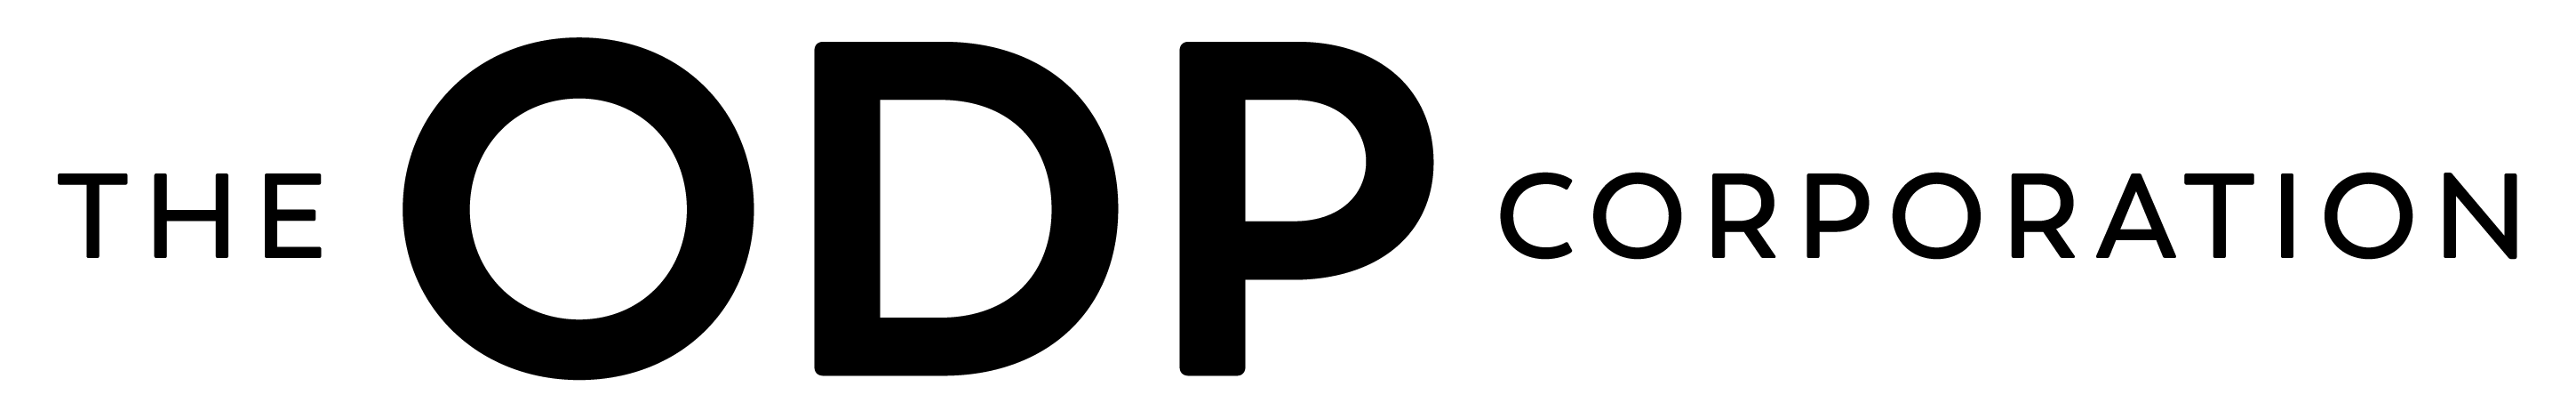 The ODP Corporation logo